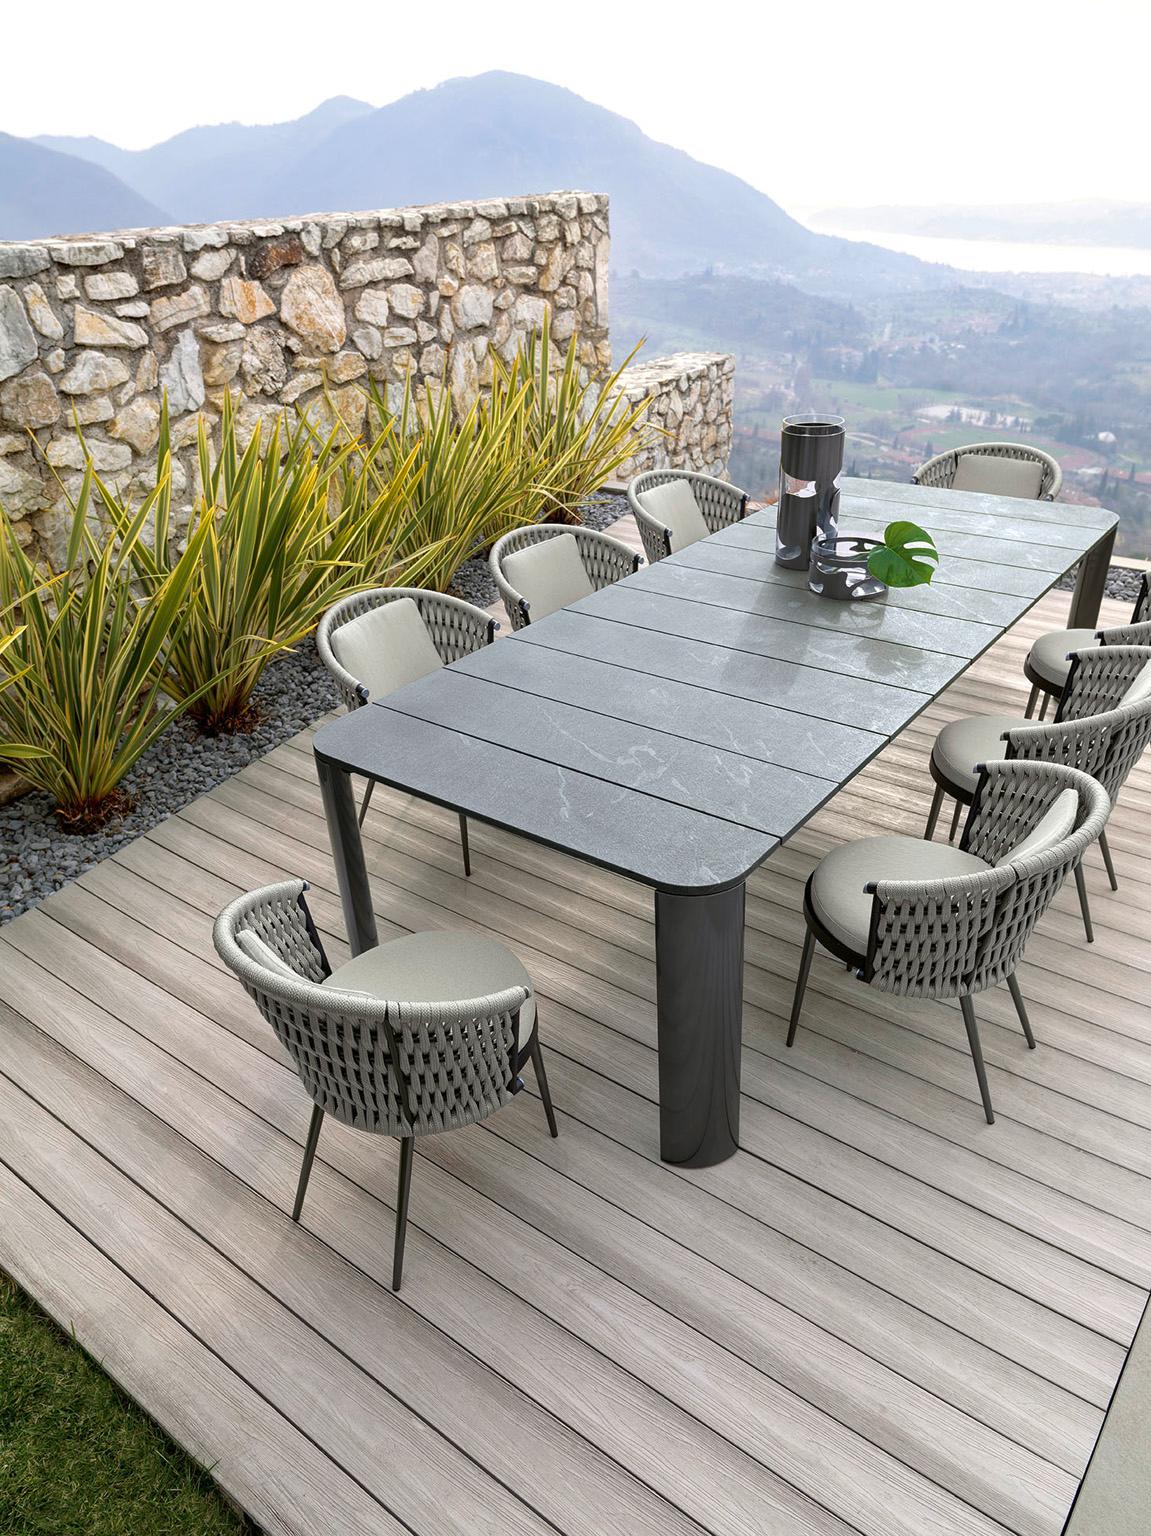 Giorgio Collection Oasi Outdoor Collection
Table rectangulaire d'extérieur avec plateau en lattes de pierre naturelle traitée 